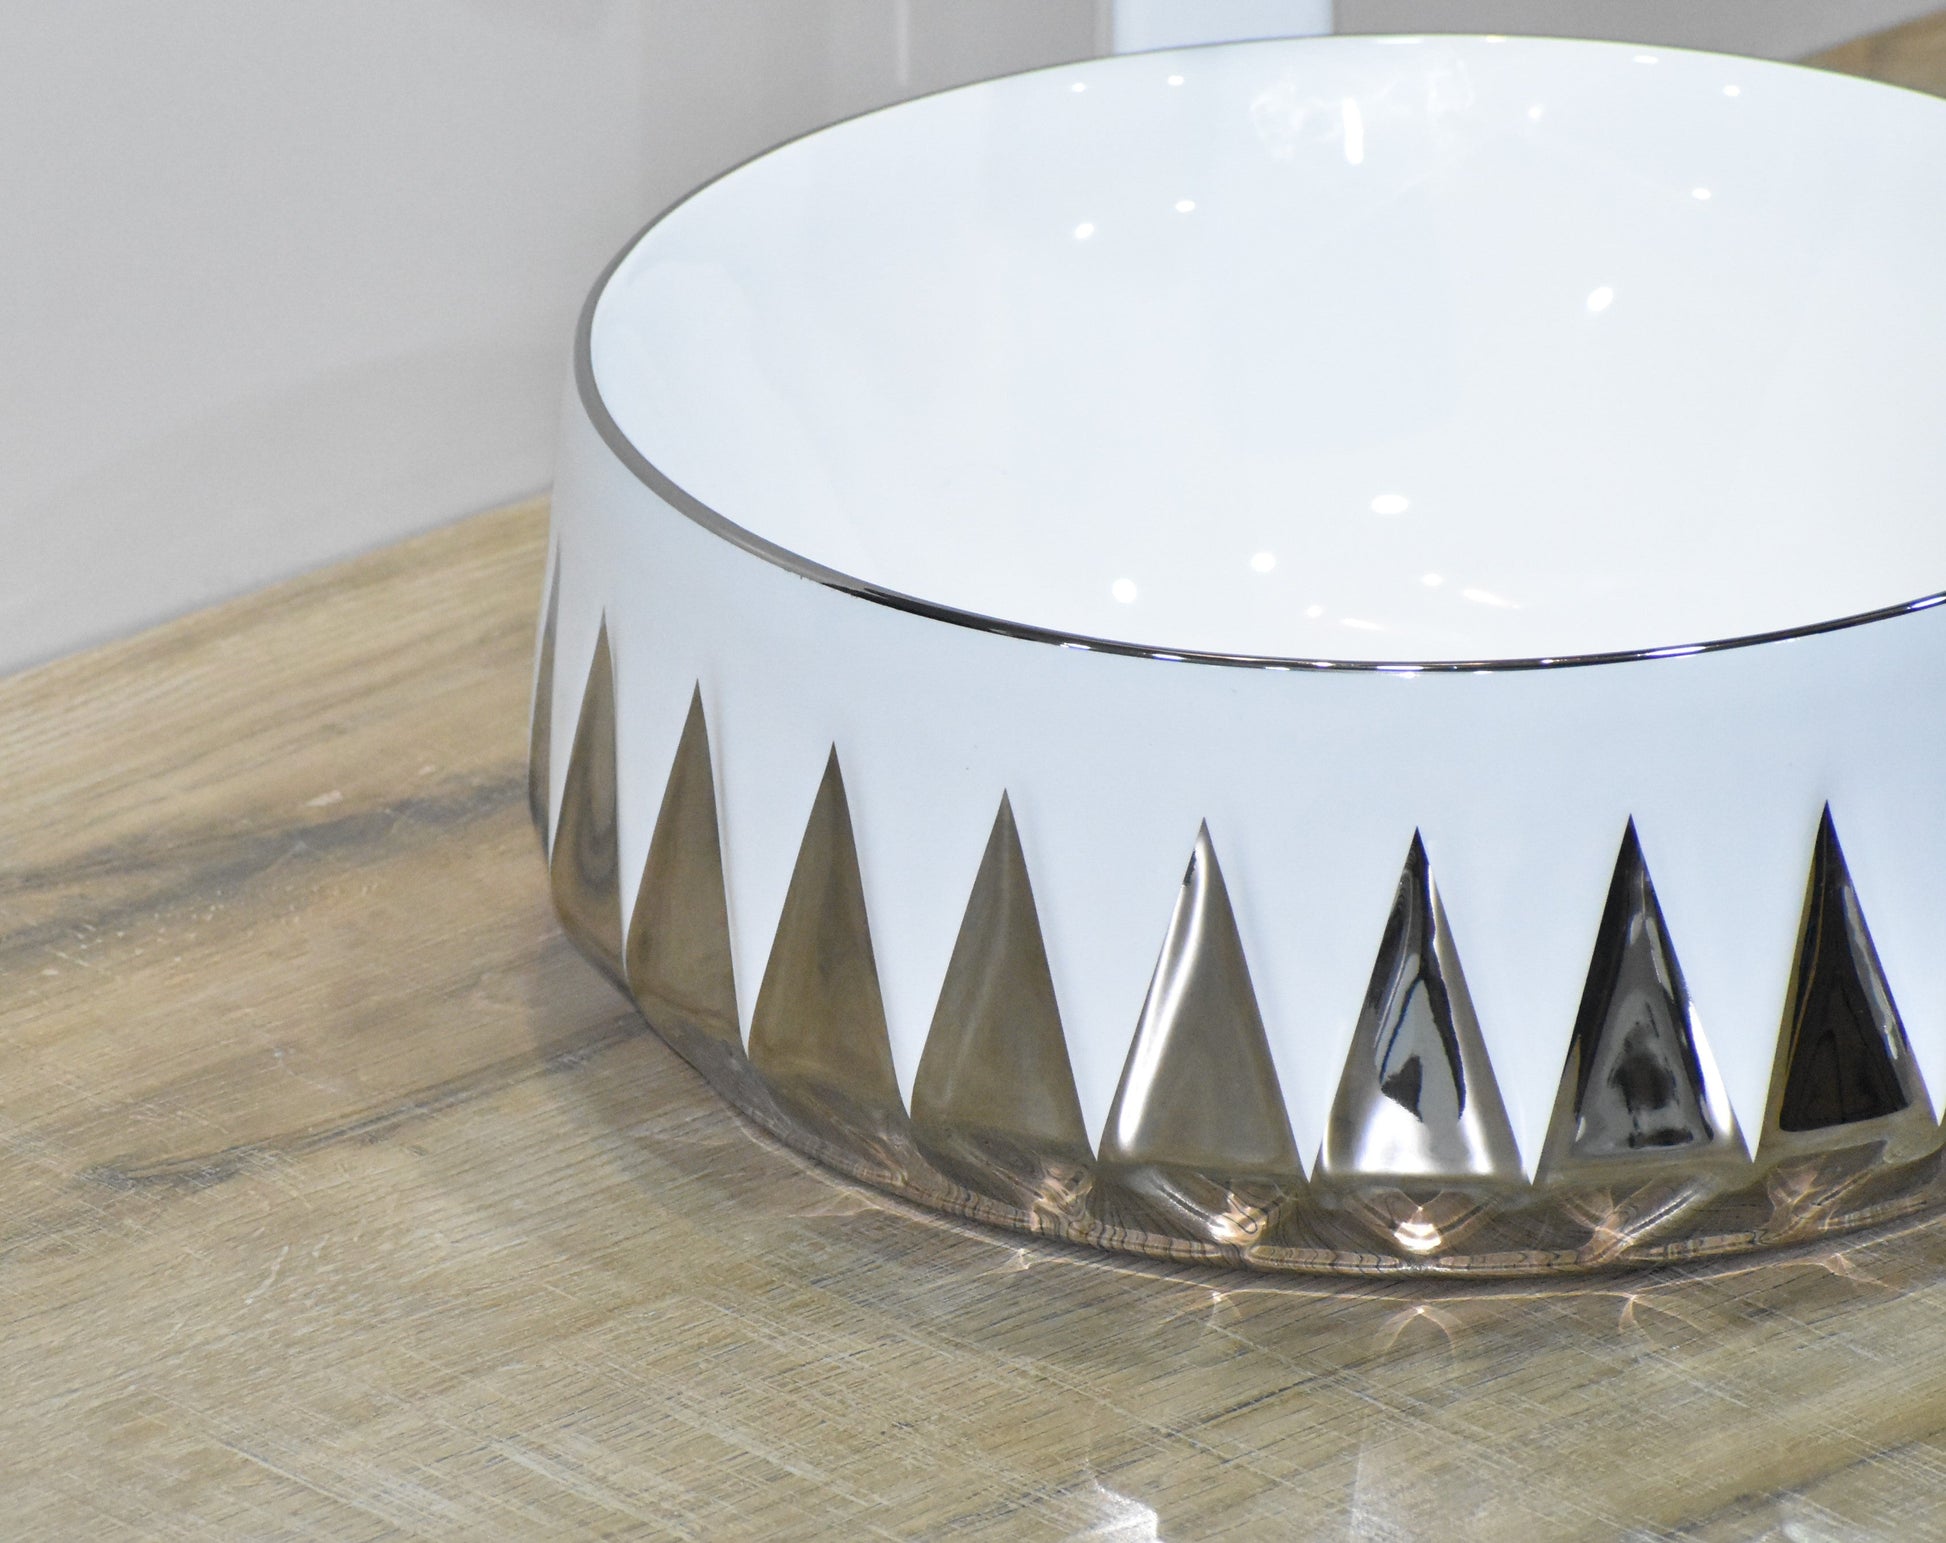 InArt Ceramic Counter or Table Top Wash Basin 36x36 CM Silver Color - InArt-Studio